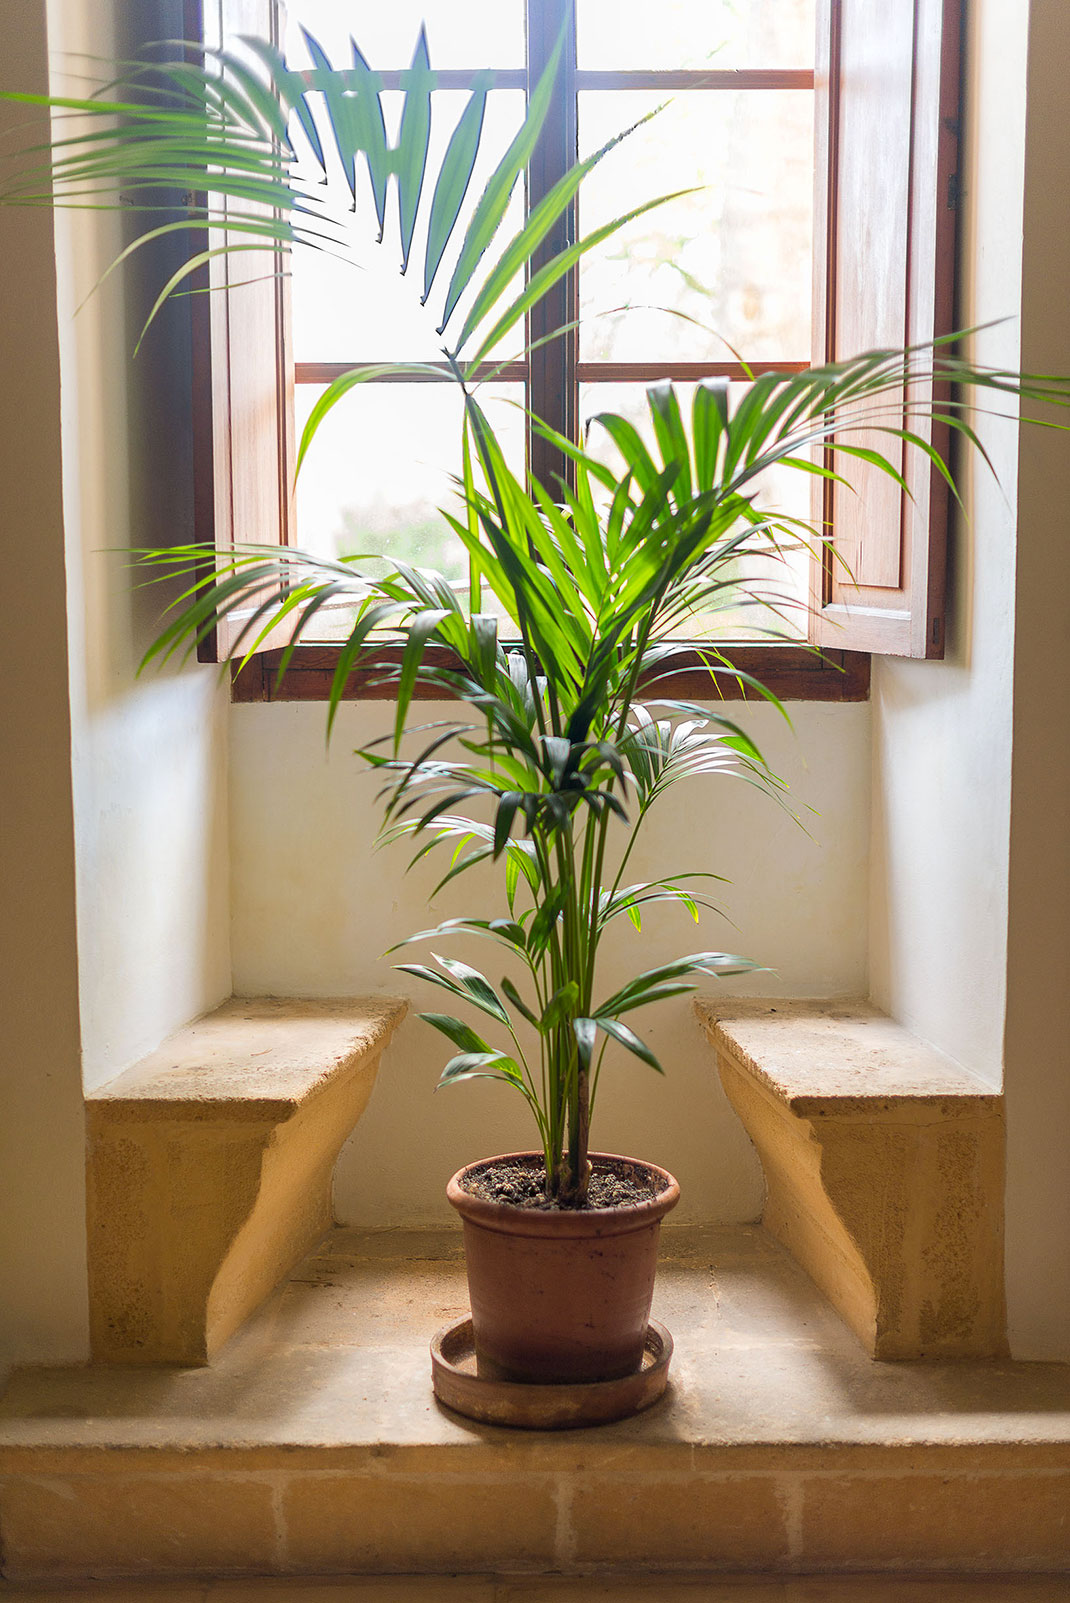 Un palmier en intérieur via Shutterstock